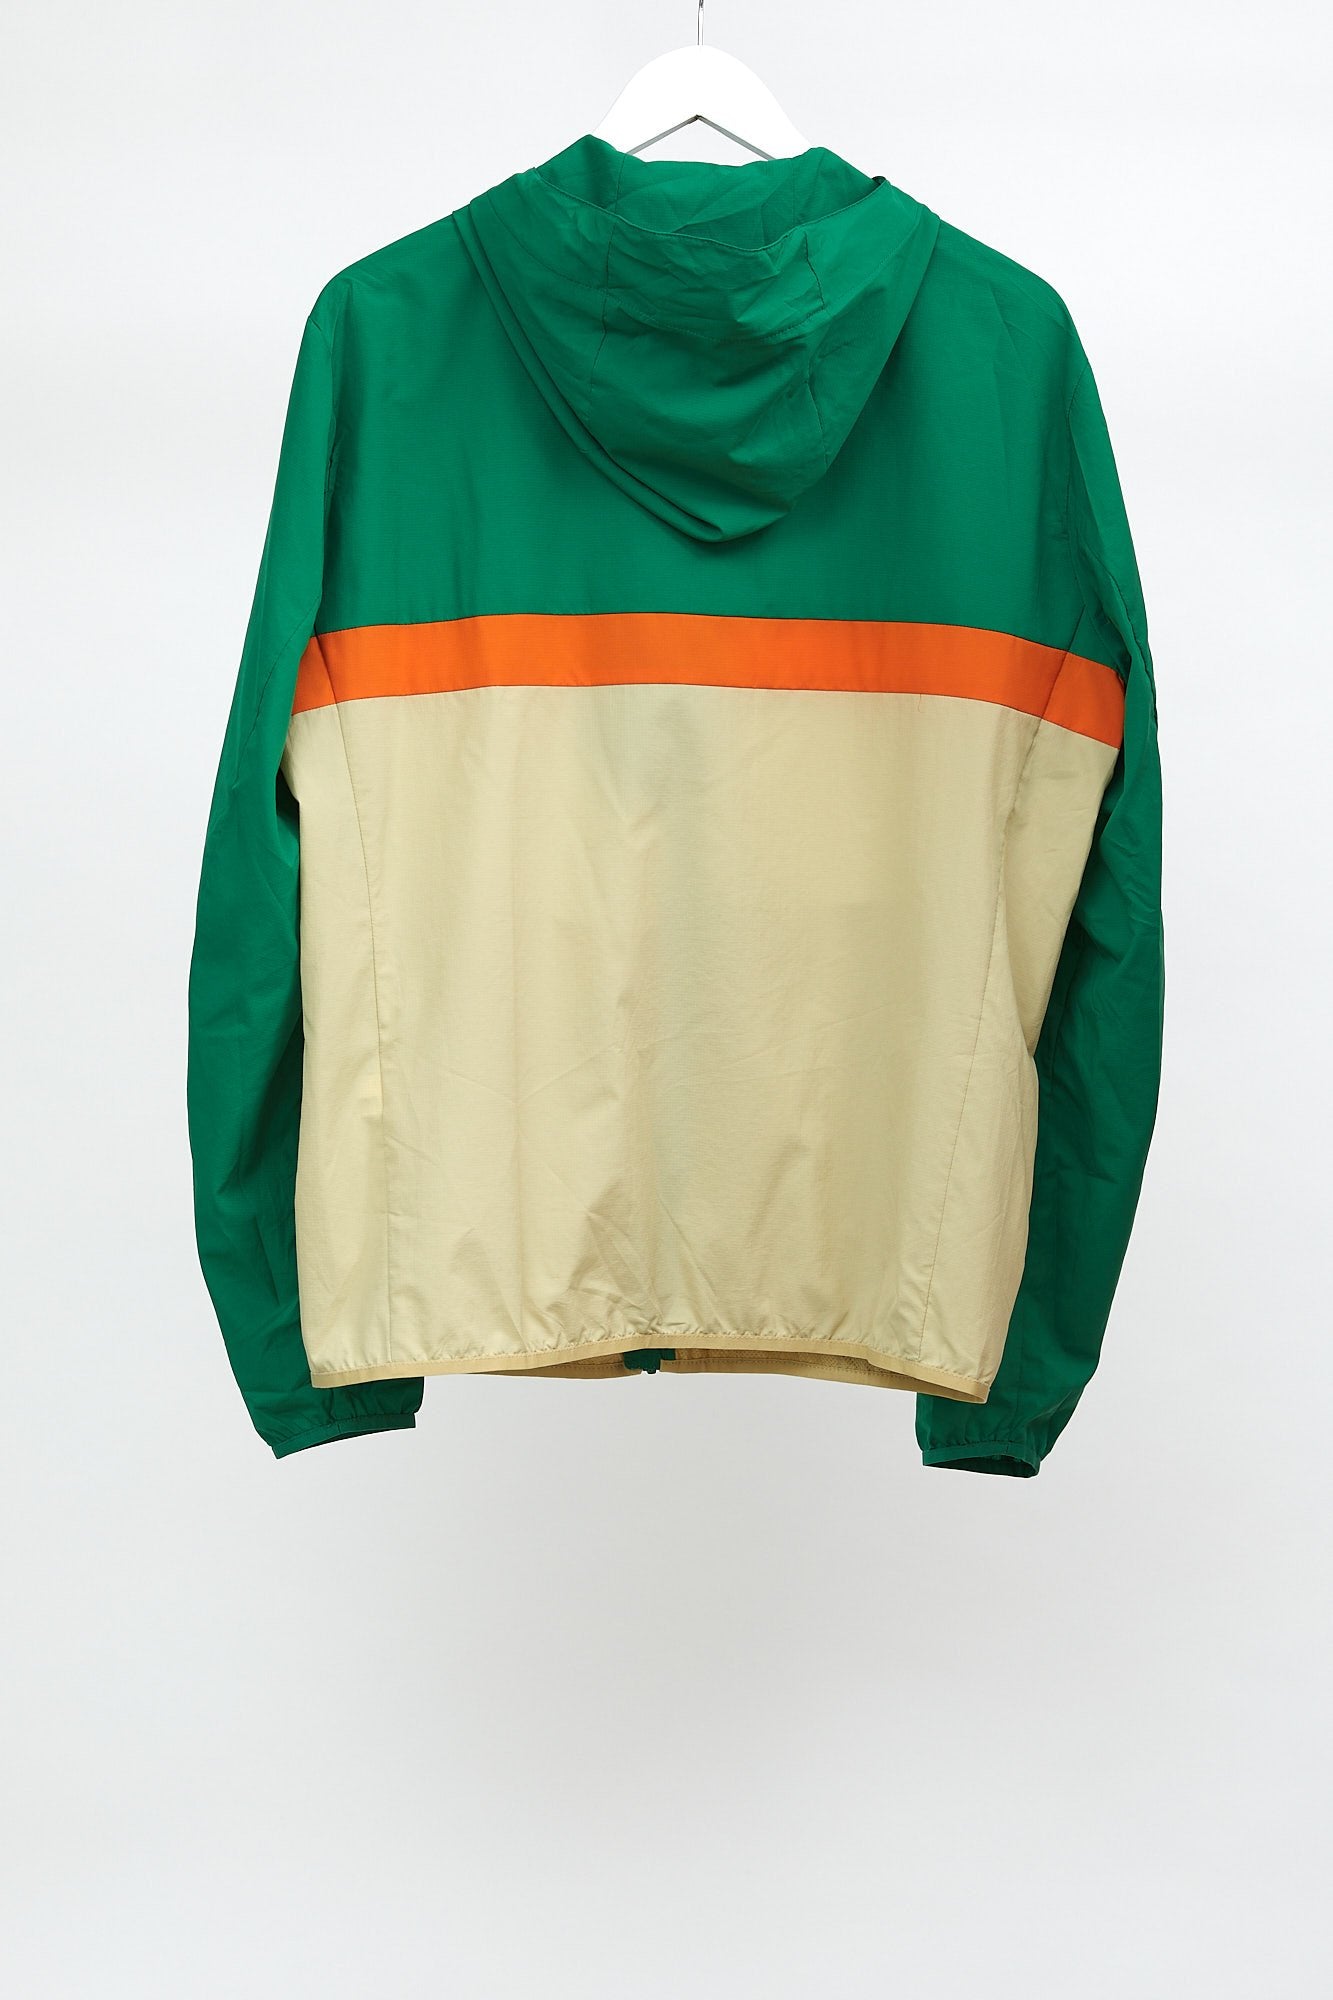 Mens Green, Orange & Cream Uniqlo Coat: Size Medium